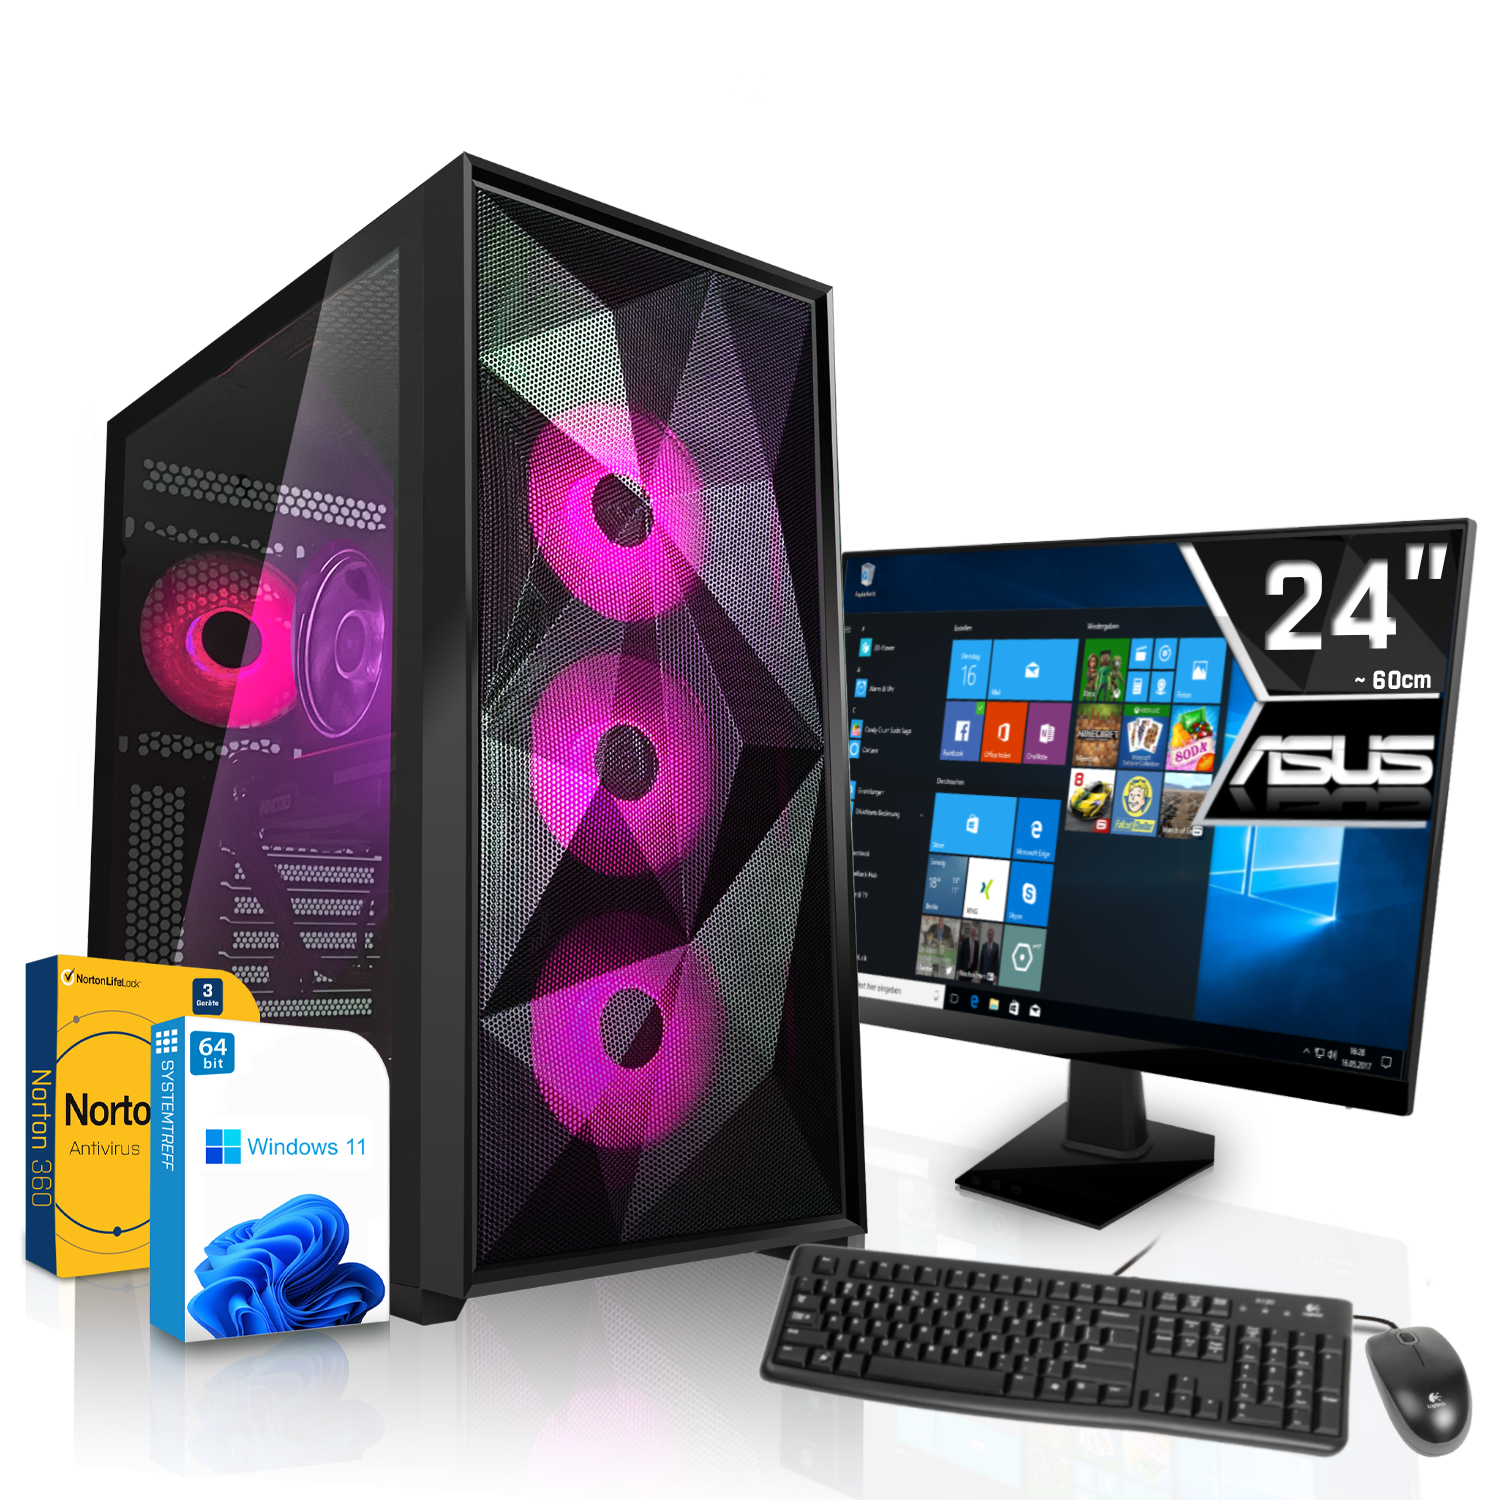 SYSTEMTREFF Gaming 7600X AMD Ryzen 7600X, GB GDDR6, Komplett RX 5 8 PC Radeon mit Komplett mSSD, RAM, 1000 7600 Prozessor, AMD GB 32 8GB GB